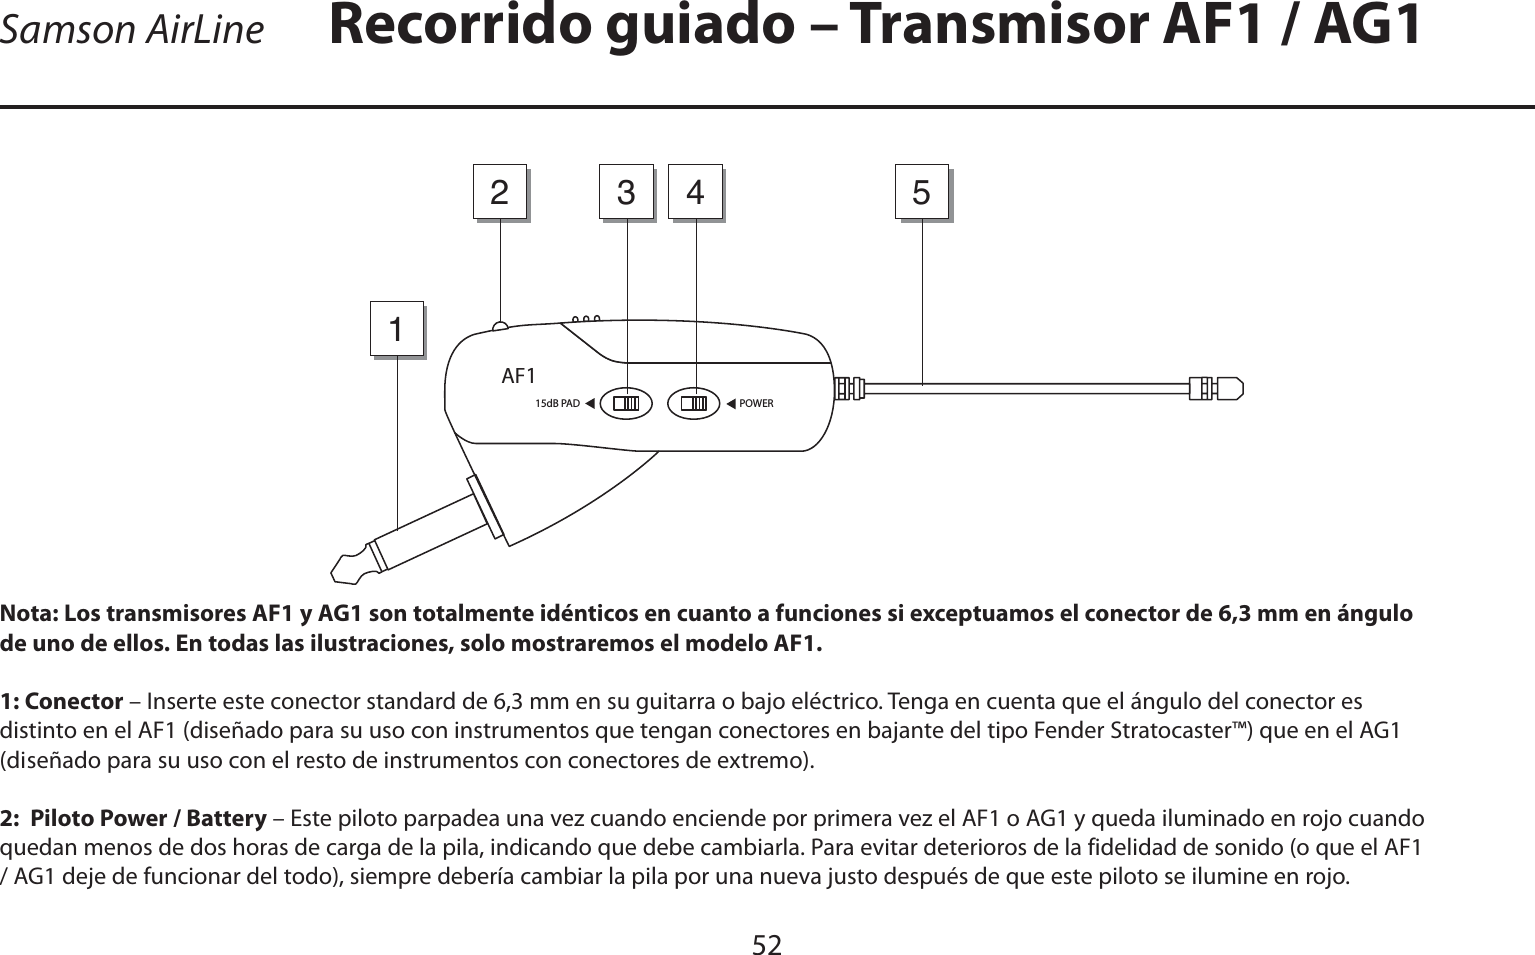 ESPAÑOLSamson AirLine52Nota: Los transmisores AF1 y AG1 son totalmente idénticos en cuanto a funciones si exceptuamos el conector de 6,3 mm en ángulo de uno de ellos. En todas las ilustraciones, solo mostraremos el modelo AF1.1: Conector – Inserte este conector standard de 6,3 mm en su guitarra o bajo eléctrico. Tenga en cuenta que el ángulo del conector es distinto en el AF1 (diseñado para su uso con instrumentos que tengan conectores en bajante del tipo Fender Stratocaster™) que en el AG1 (diseñado para su uso con el resto de instrumentos con conectores de extremo).2:  Piloto Power / Battery – Este piloto parpadea una vez cuando enciende por primera vez el AF1 o AG1 y queda iluminado en rojo cuando quedan menos de dos horas de carga de la pila, indicando que debe cambiarla. Para evitar deterioros de la fidelidad de sonido (o que el AF1 / AG1 deje de funcionar del todo), siempre debería cambiar la pila por una nueva justo después de que este piloto se ilumine en rojo.Recorrido guiado – Transmisor AF1 / AG1POWER15dB PADAF13214 5